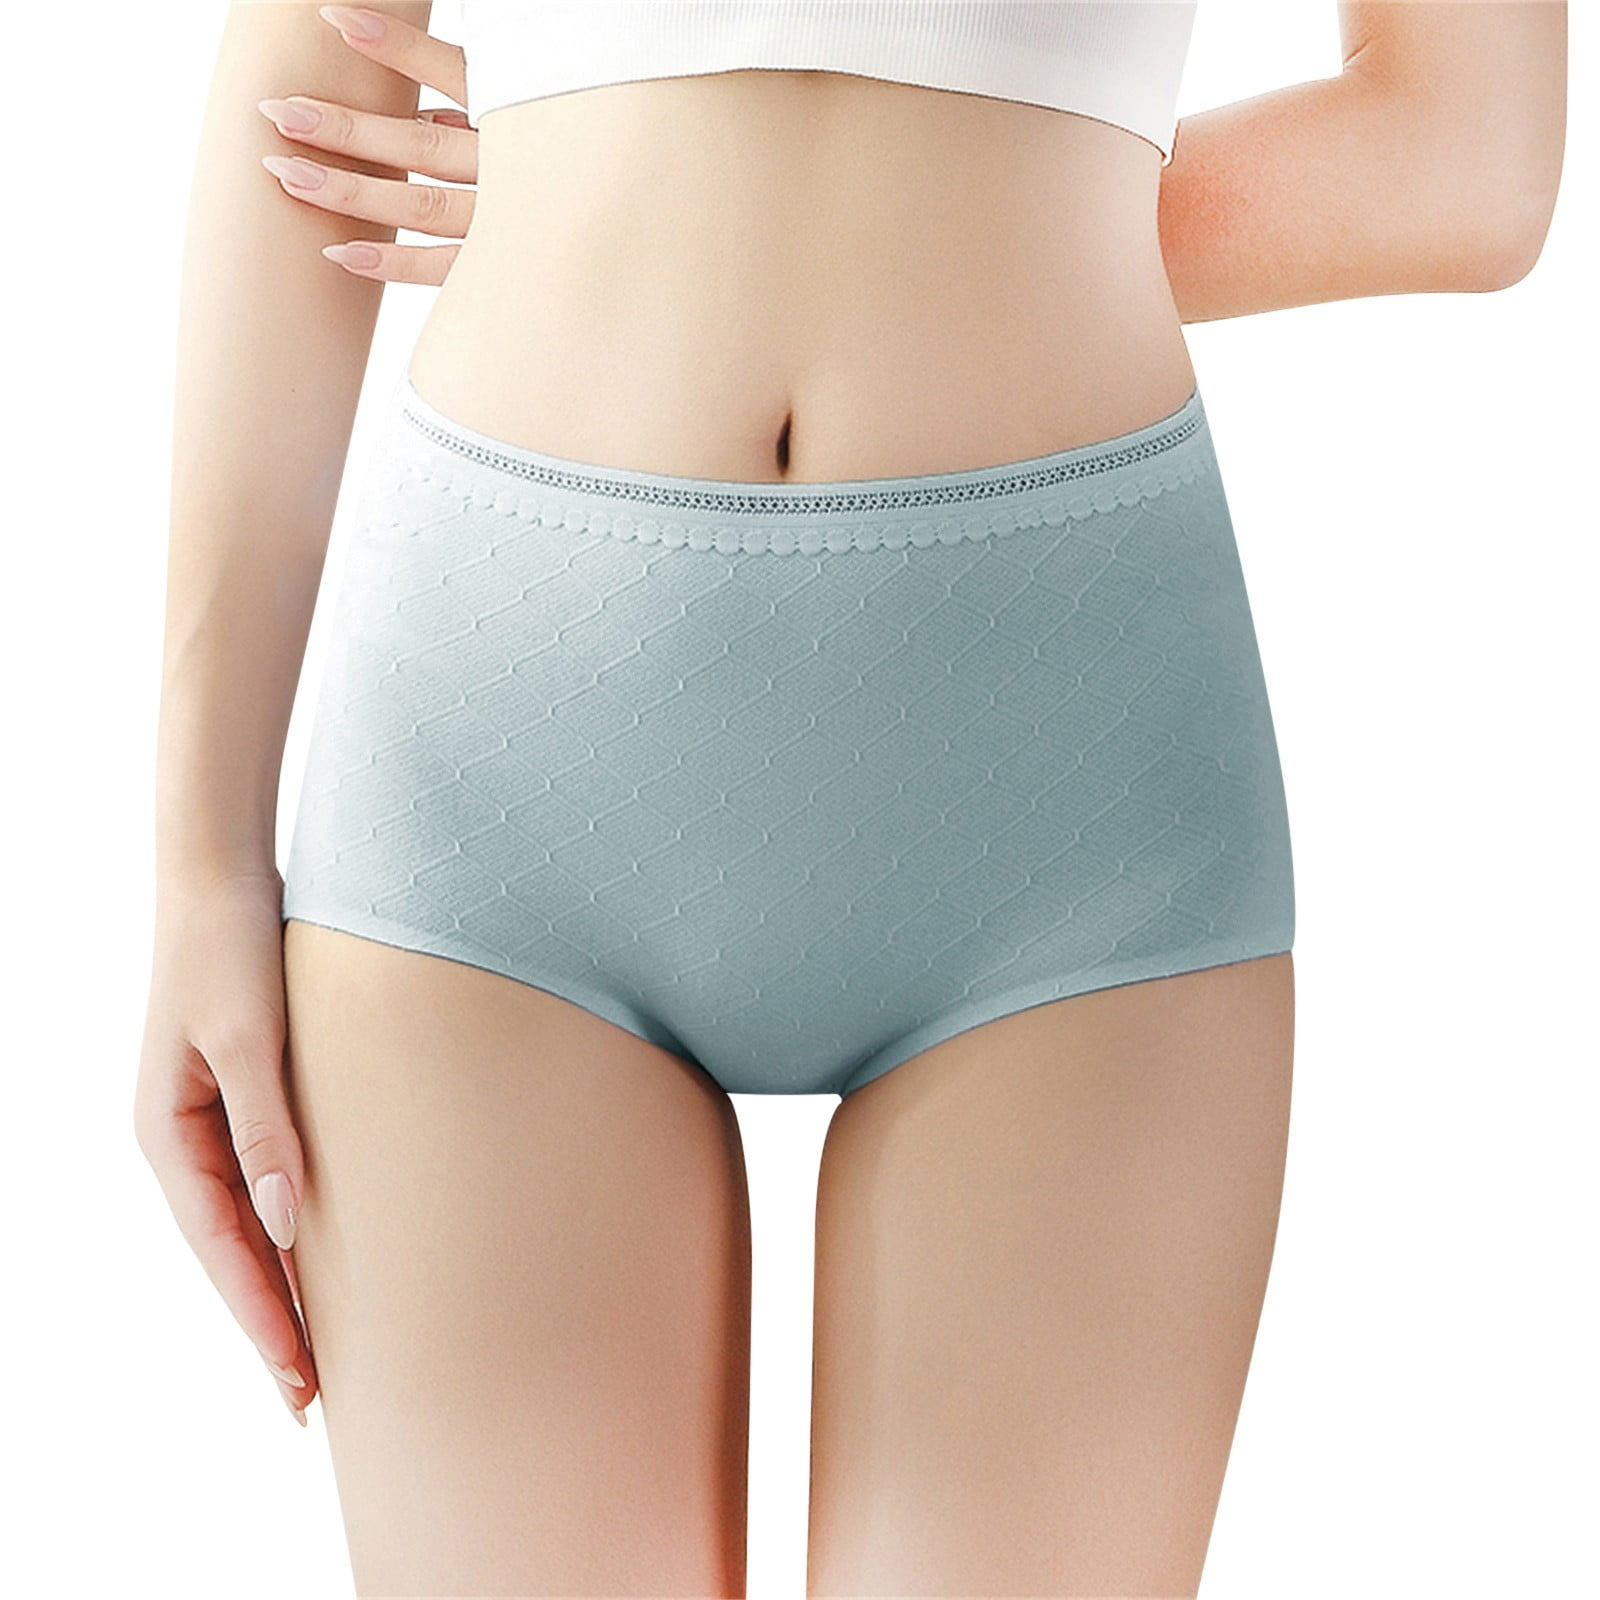 shpwfbe underwear women high waist tummy control ie shapewear brief ies  bras for women lingerie for women 